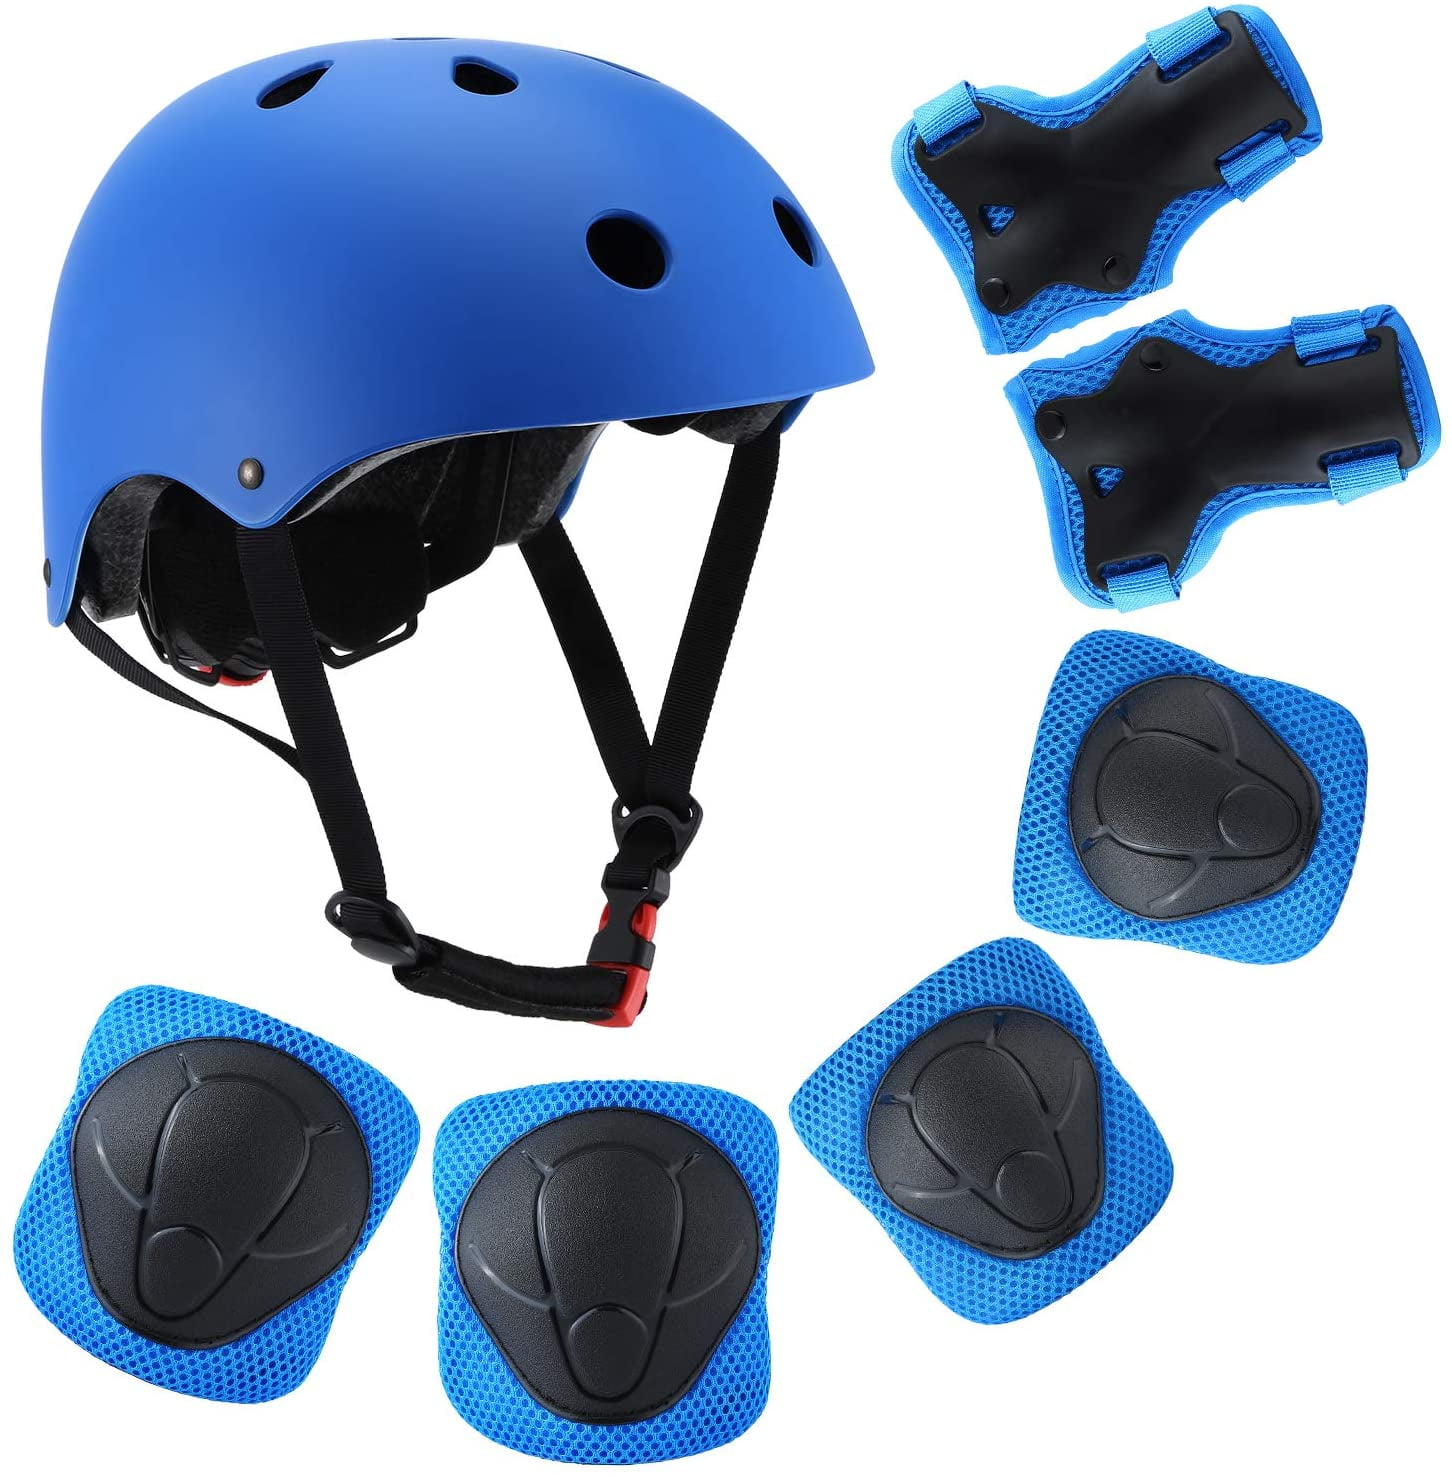 Los niños jóvenes/chica casco & rodilla codos pad set bicicleta skate Safety nuevo 